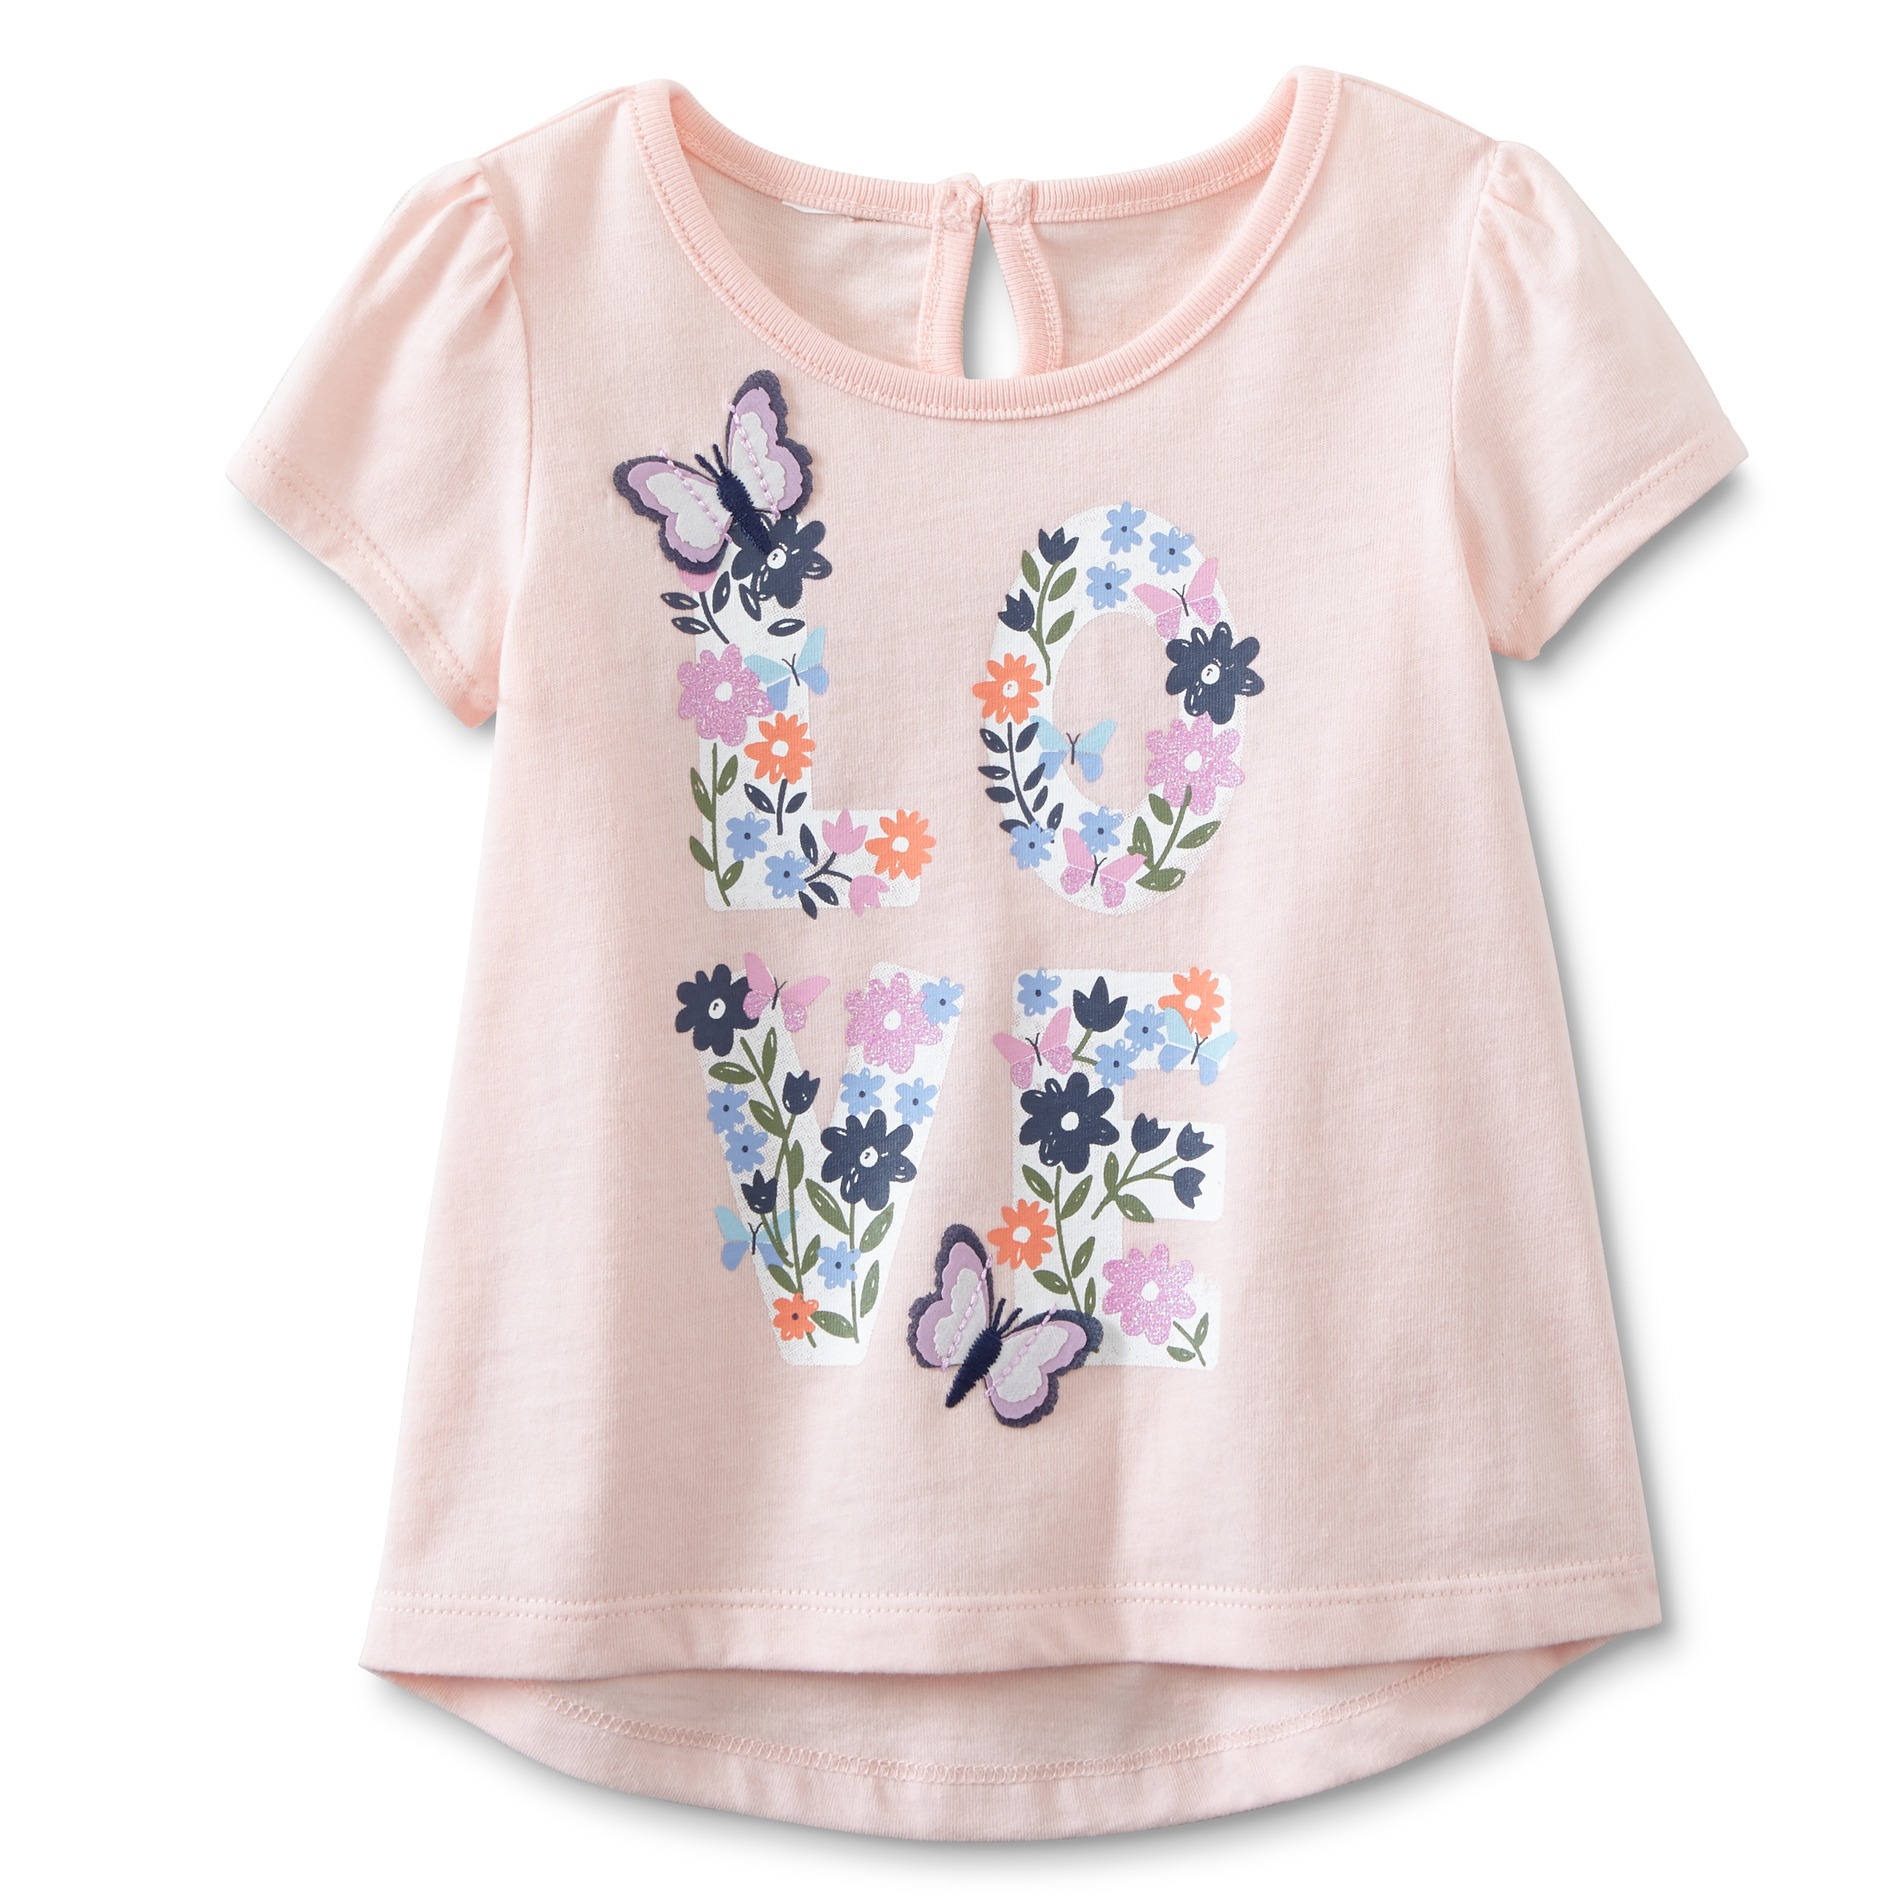 Toughskins Infant & Toddler Girls' Embellished T-Shirt - Love